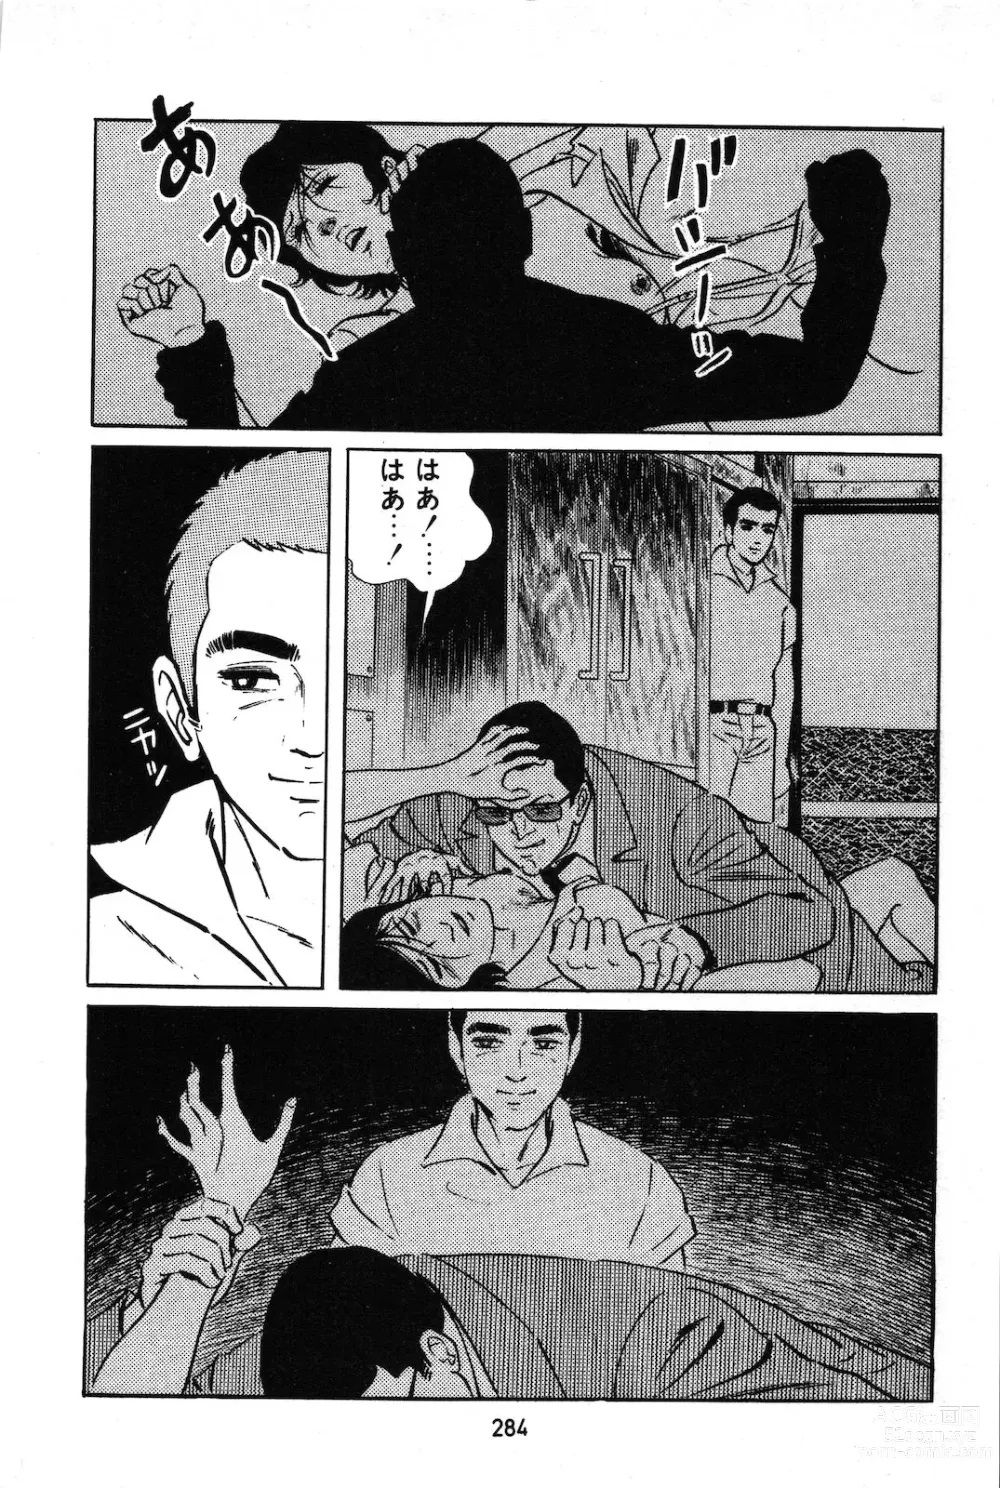 Page 26 of manga Koukousei Burai Hikae 1-8